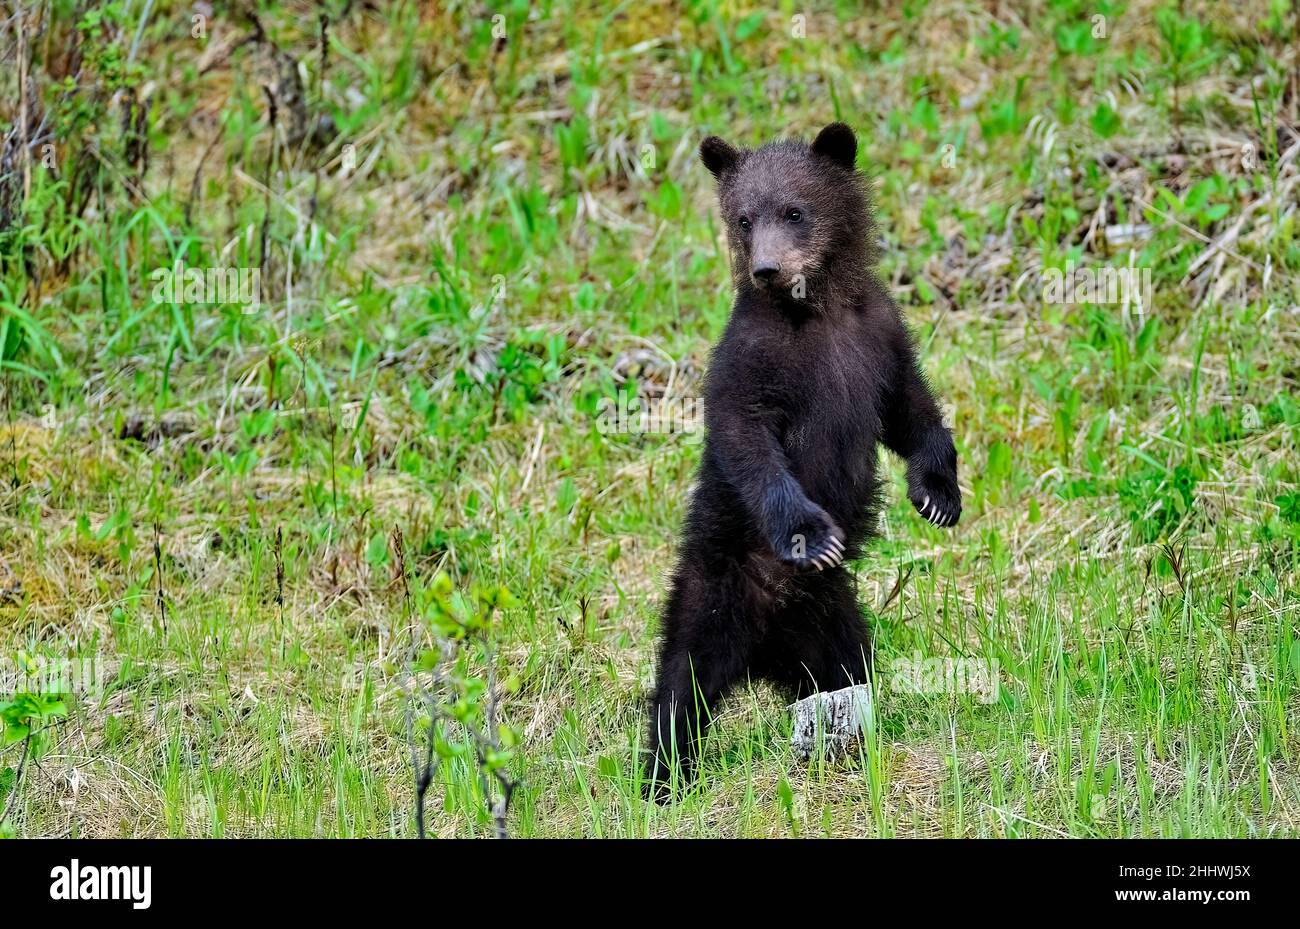 Ein wildes Grizzlybärenjunges (Ursus arctos), das auf seinen Hinterbeinen steht, um einen besseren Blick auf seine Umgebung im ländlichen Alberta, Kanada, zu erhalten. Stockfoto